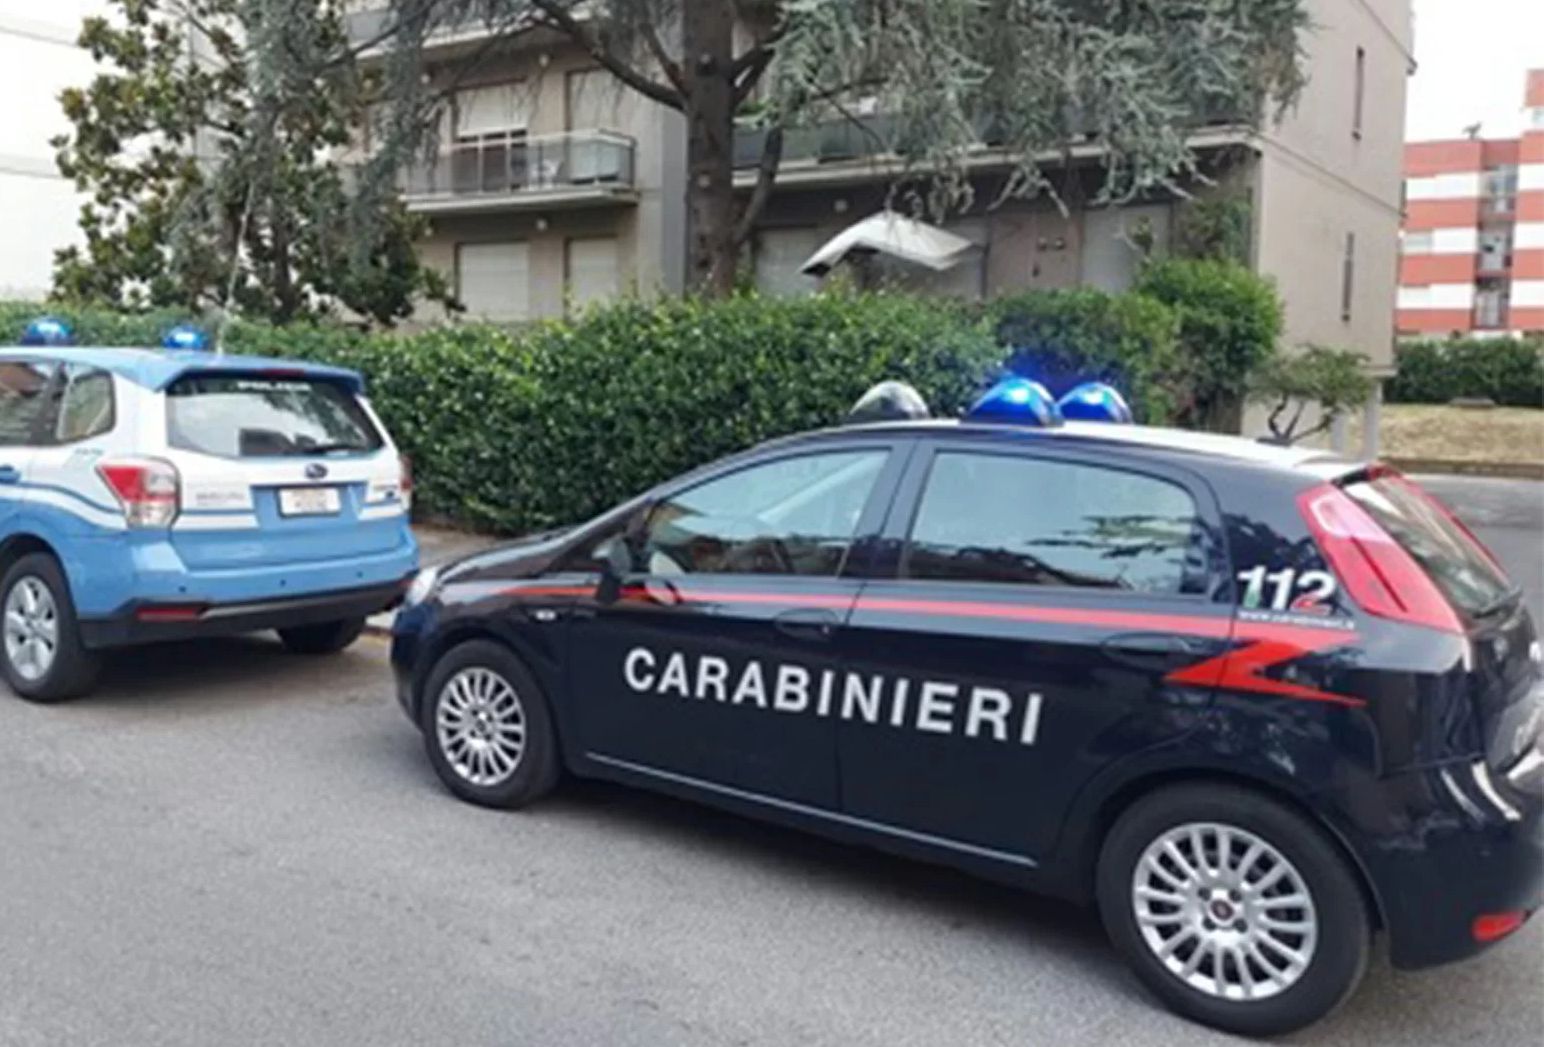 Carabinieri e polizia arresto rapinatori seriali aprilia